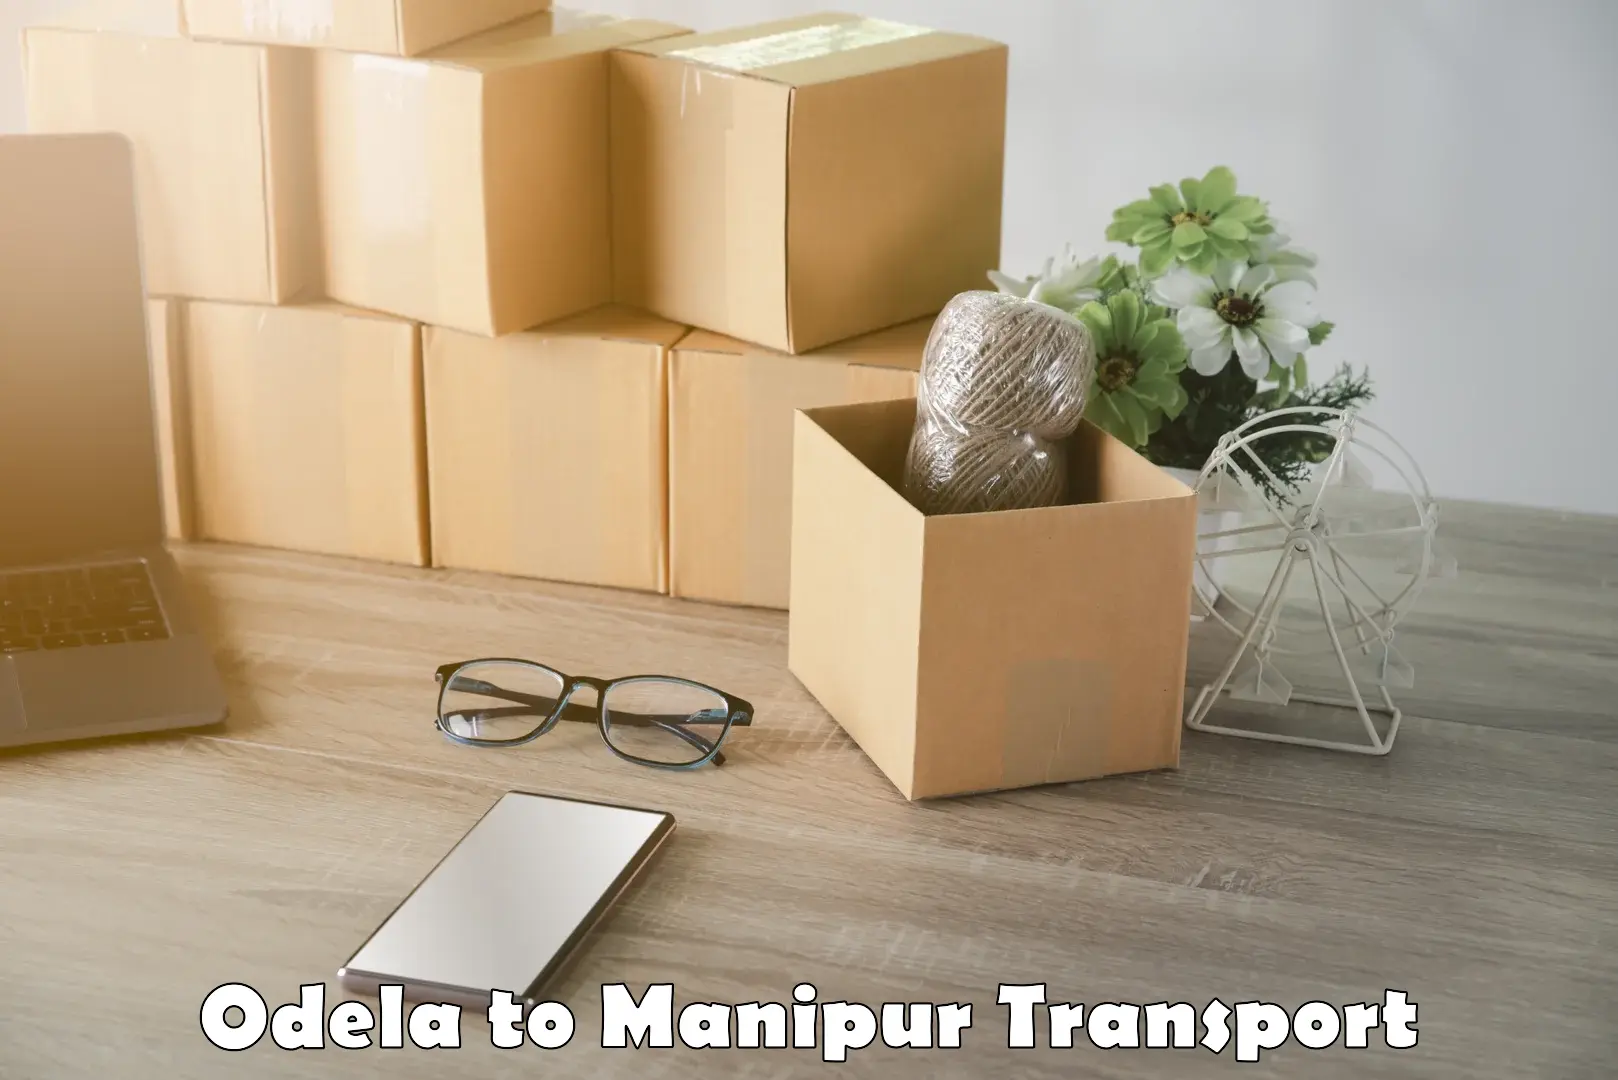 Land transport services in Odela to Kangpokpi